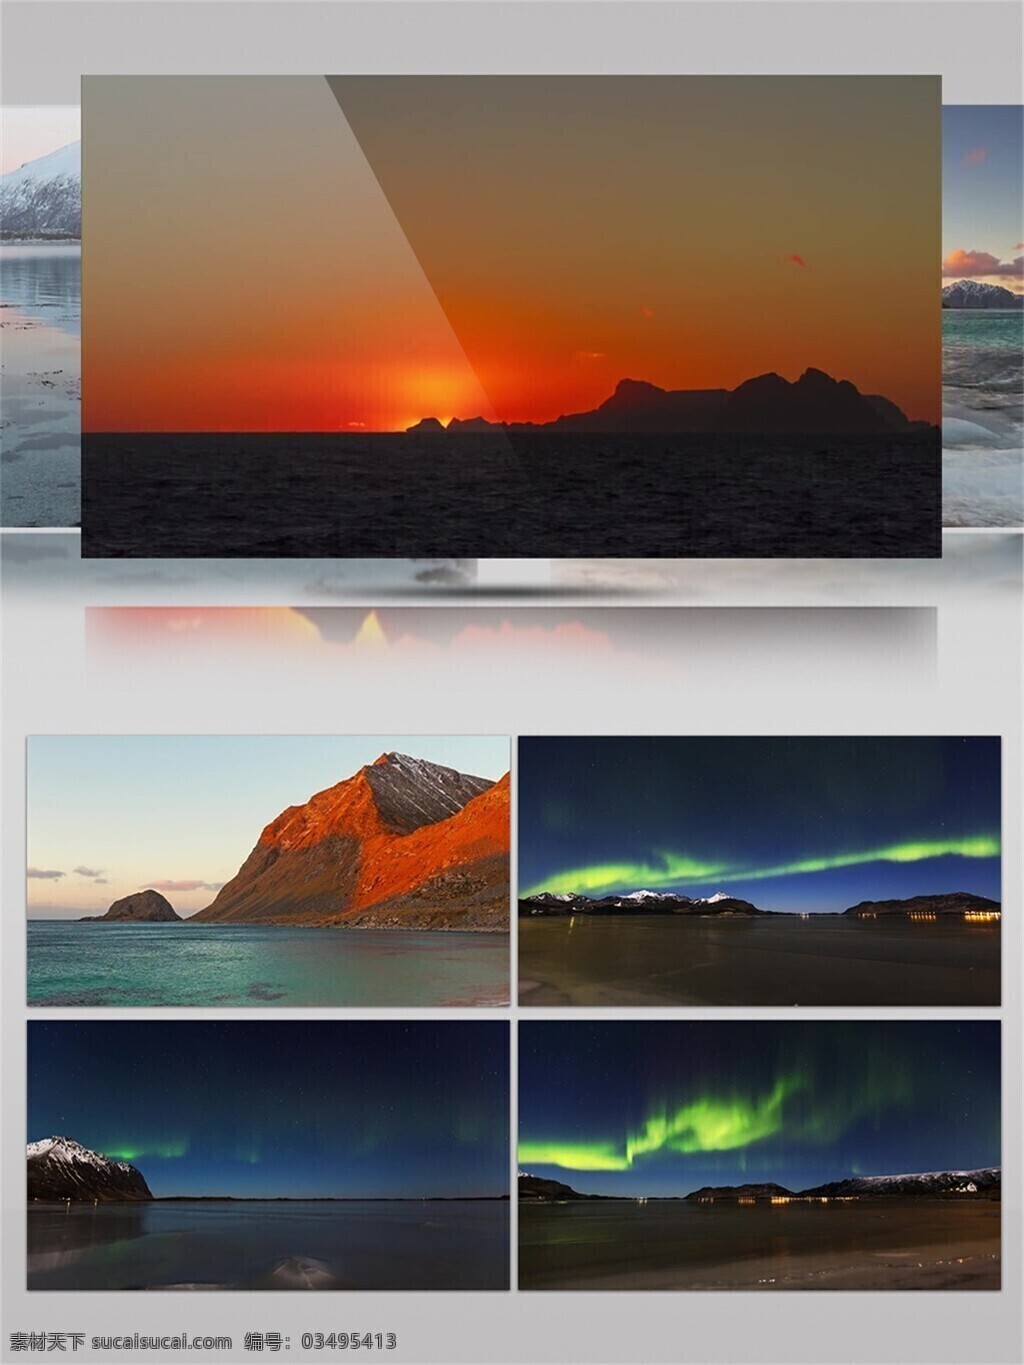 北极 极光 风光 景色 视频 音效 绚丽多彩 发光 灿烂 美丽 神奇 视频音效 南北两极